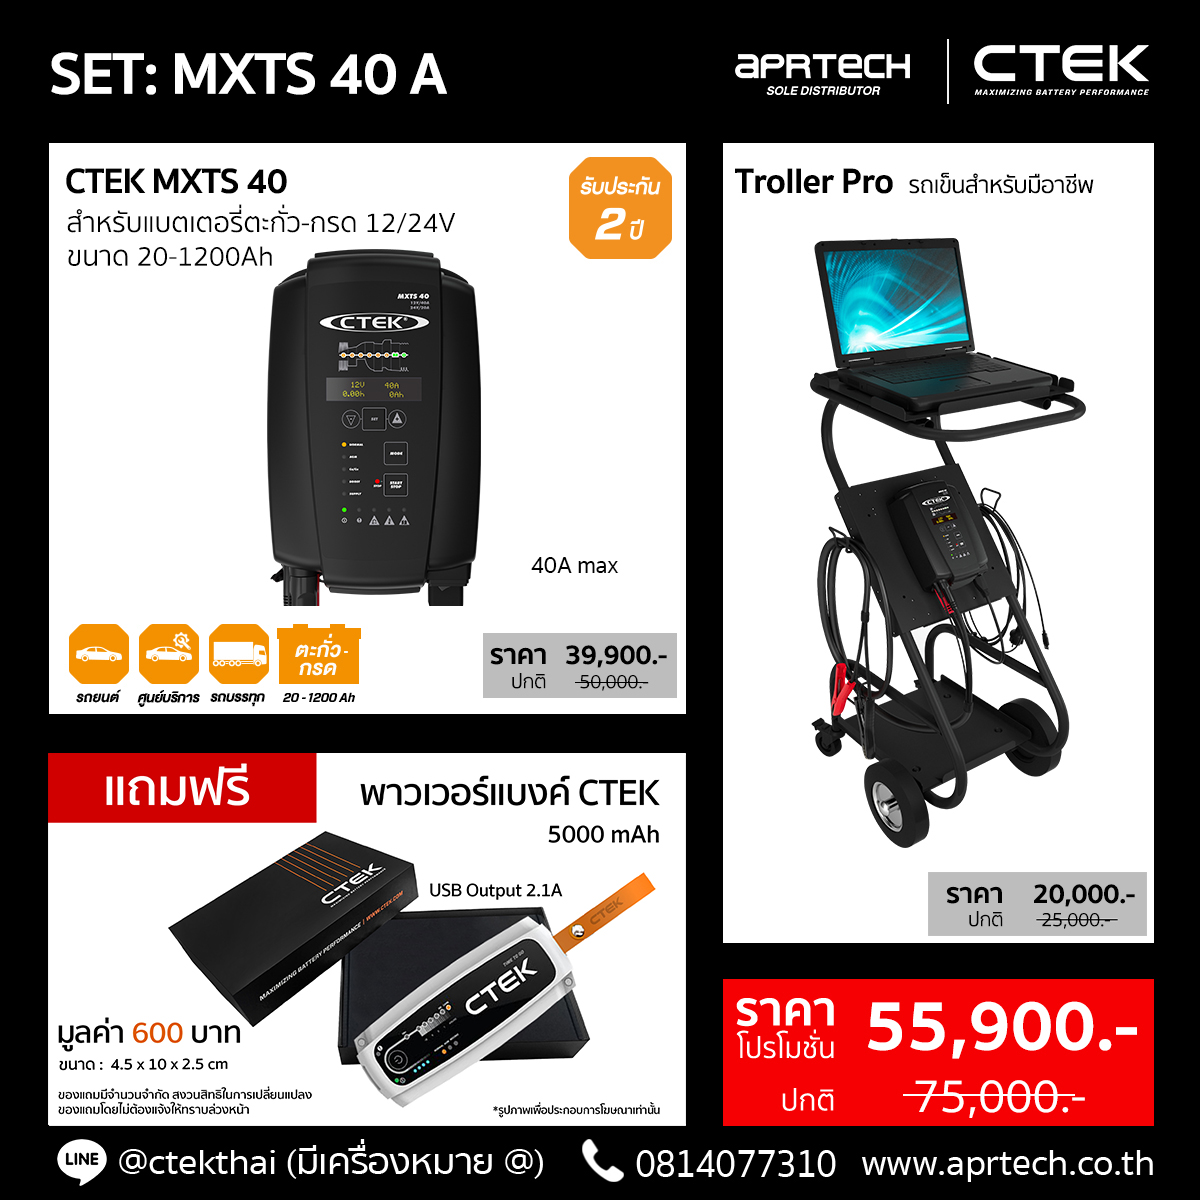 SET MXTS 40 A (CTEK MXTS 40 + Trolley Pro)